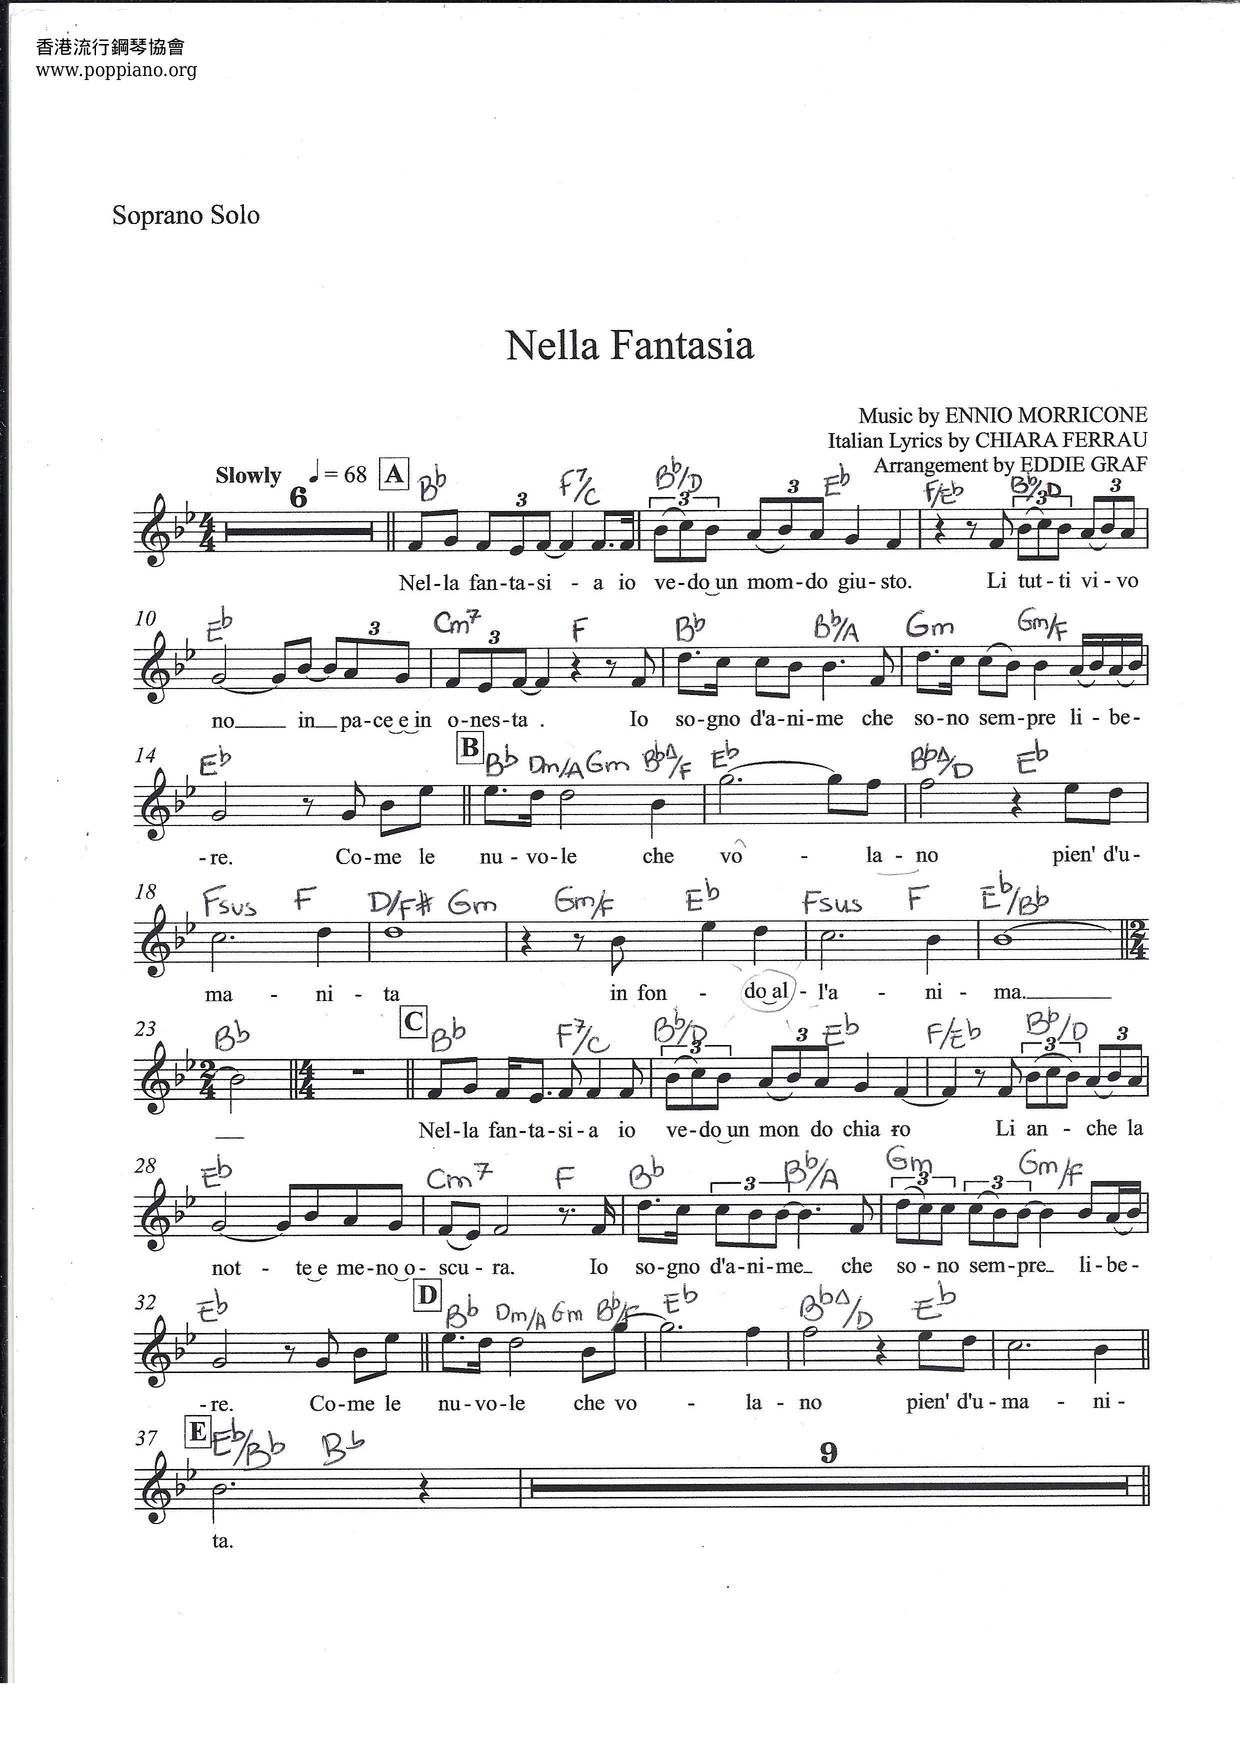 Nella Fantasiaピアノ譜